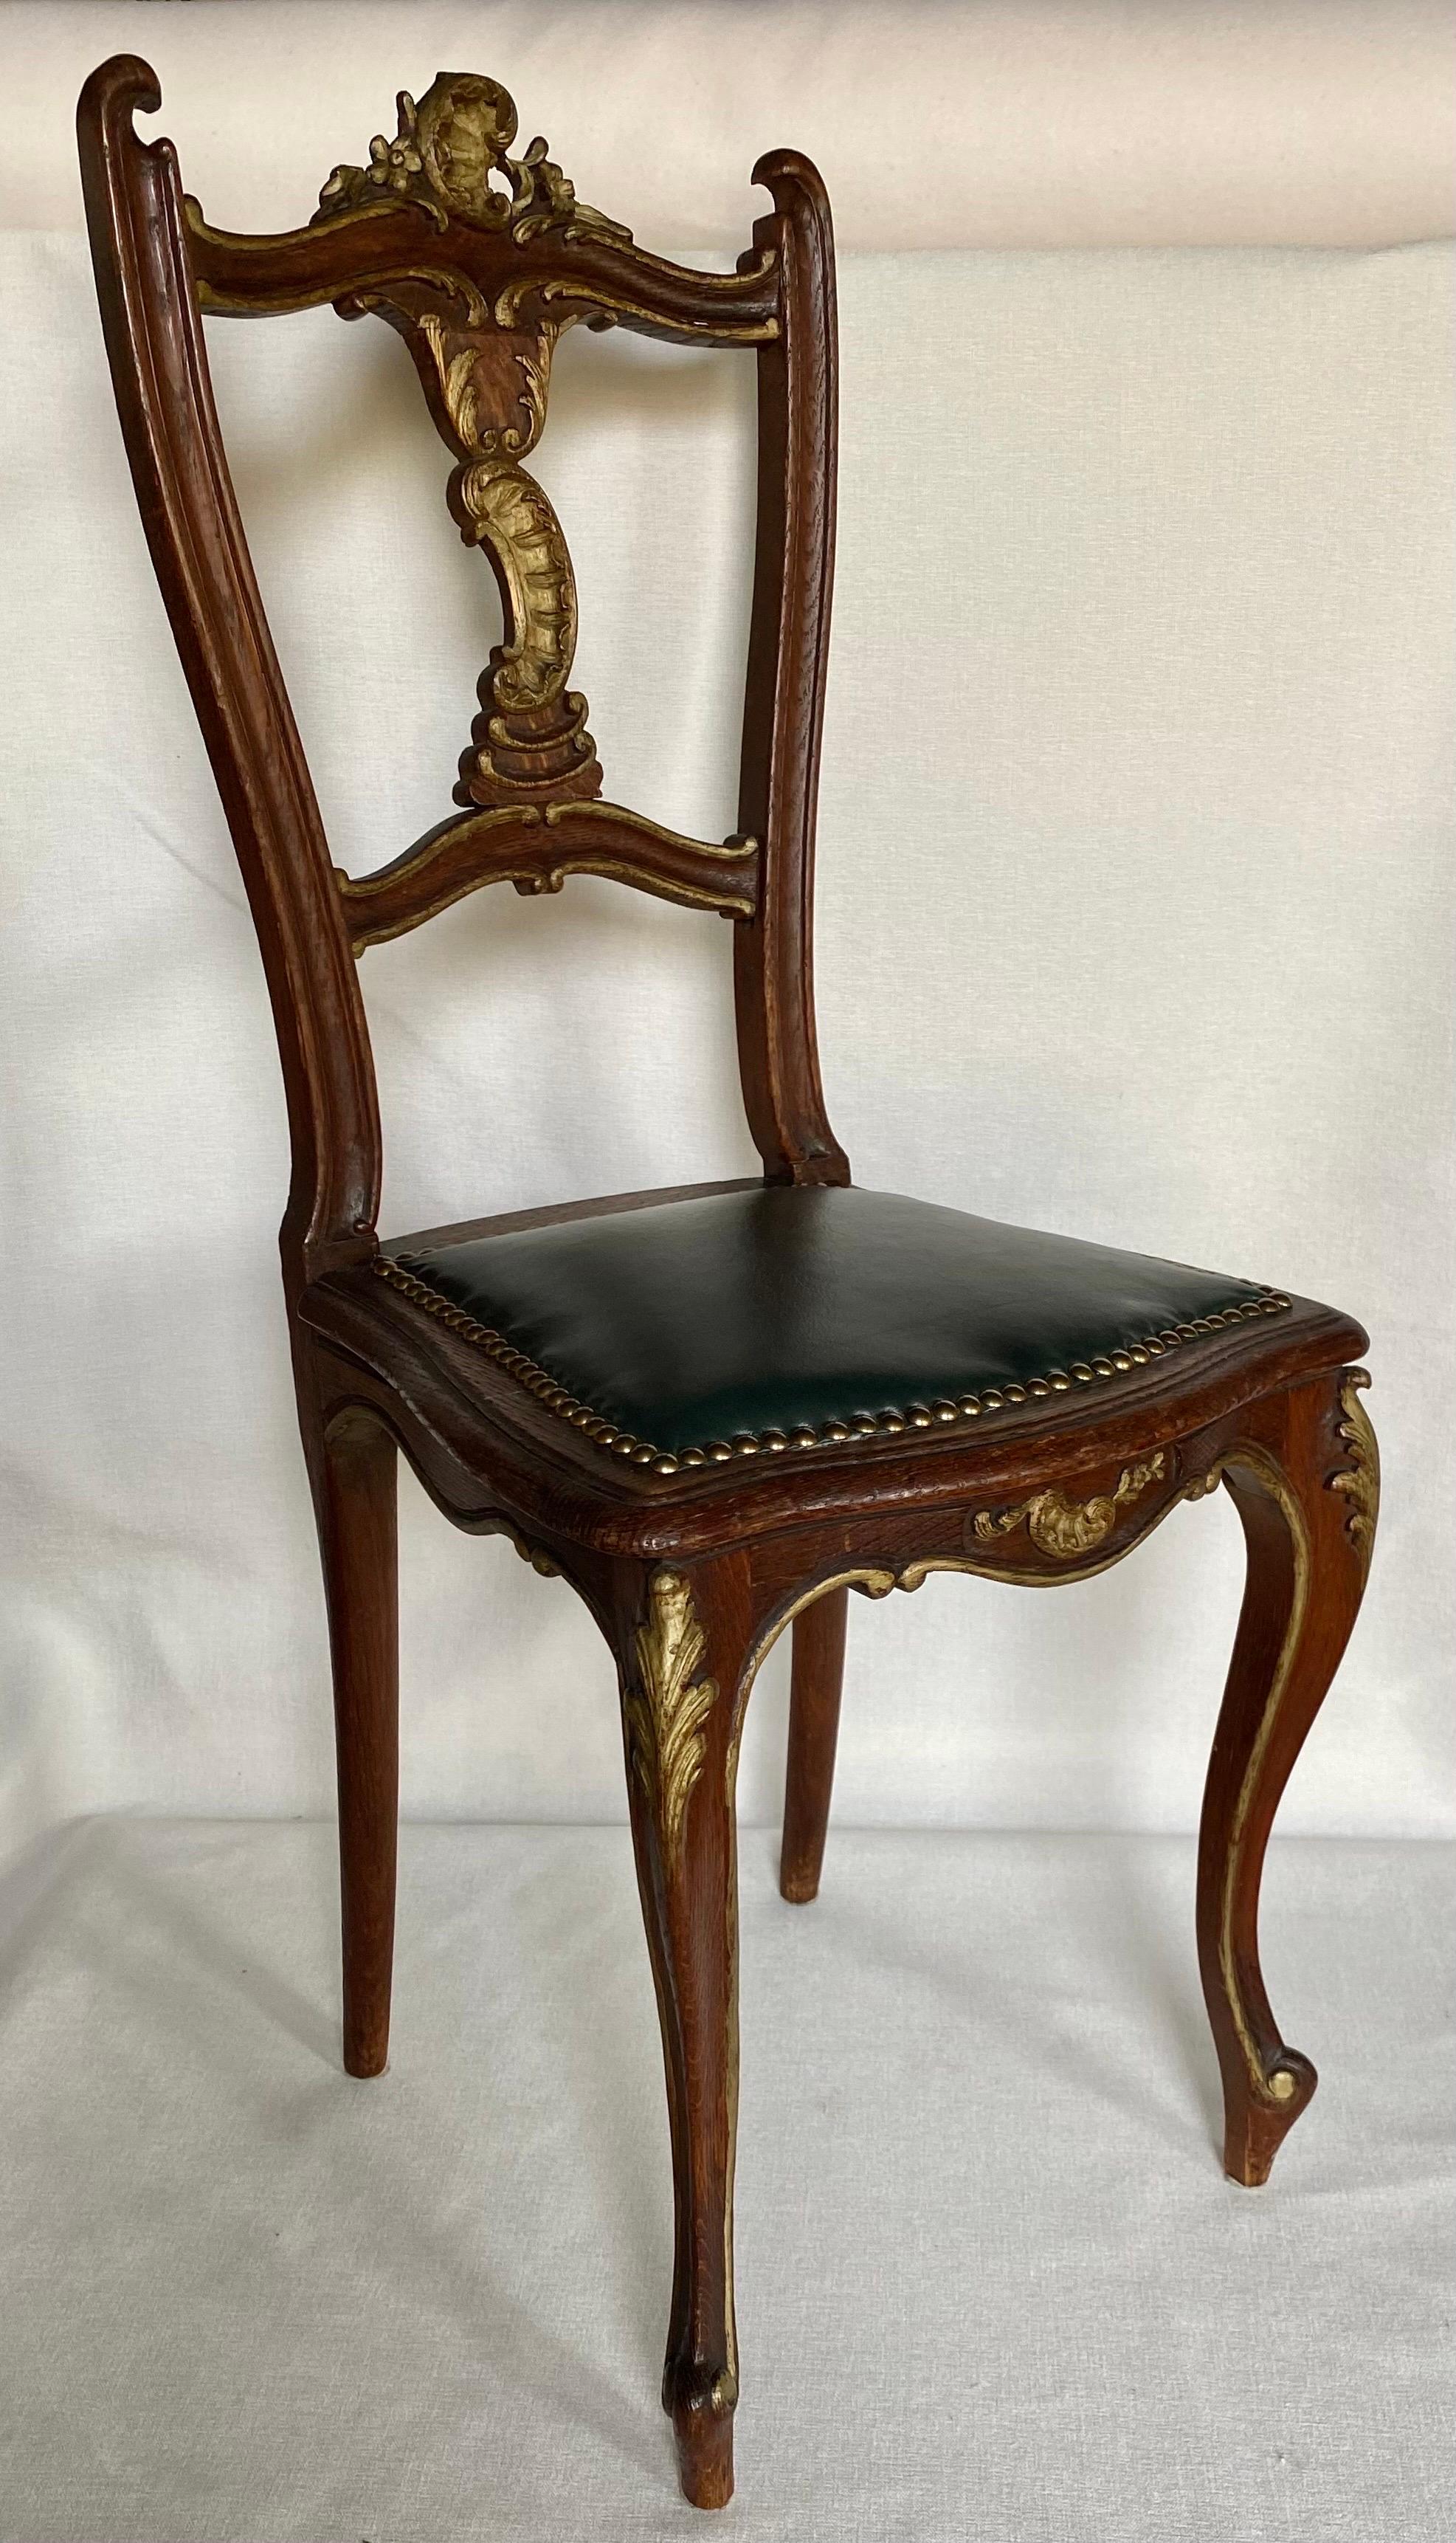 Chaise d'appoint de style Louis XV avec accents dorés sculptés en volutes et pieds cabriole courbés. Cette petite chaise d'appoint très décorée est recouverte de cuir vert foncé et garnie de têtes de clous en laiton. Elle ferait une fabuleuse chaise